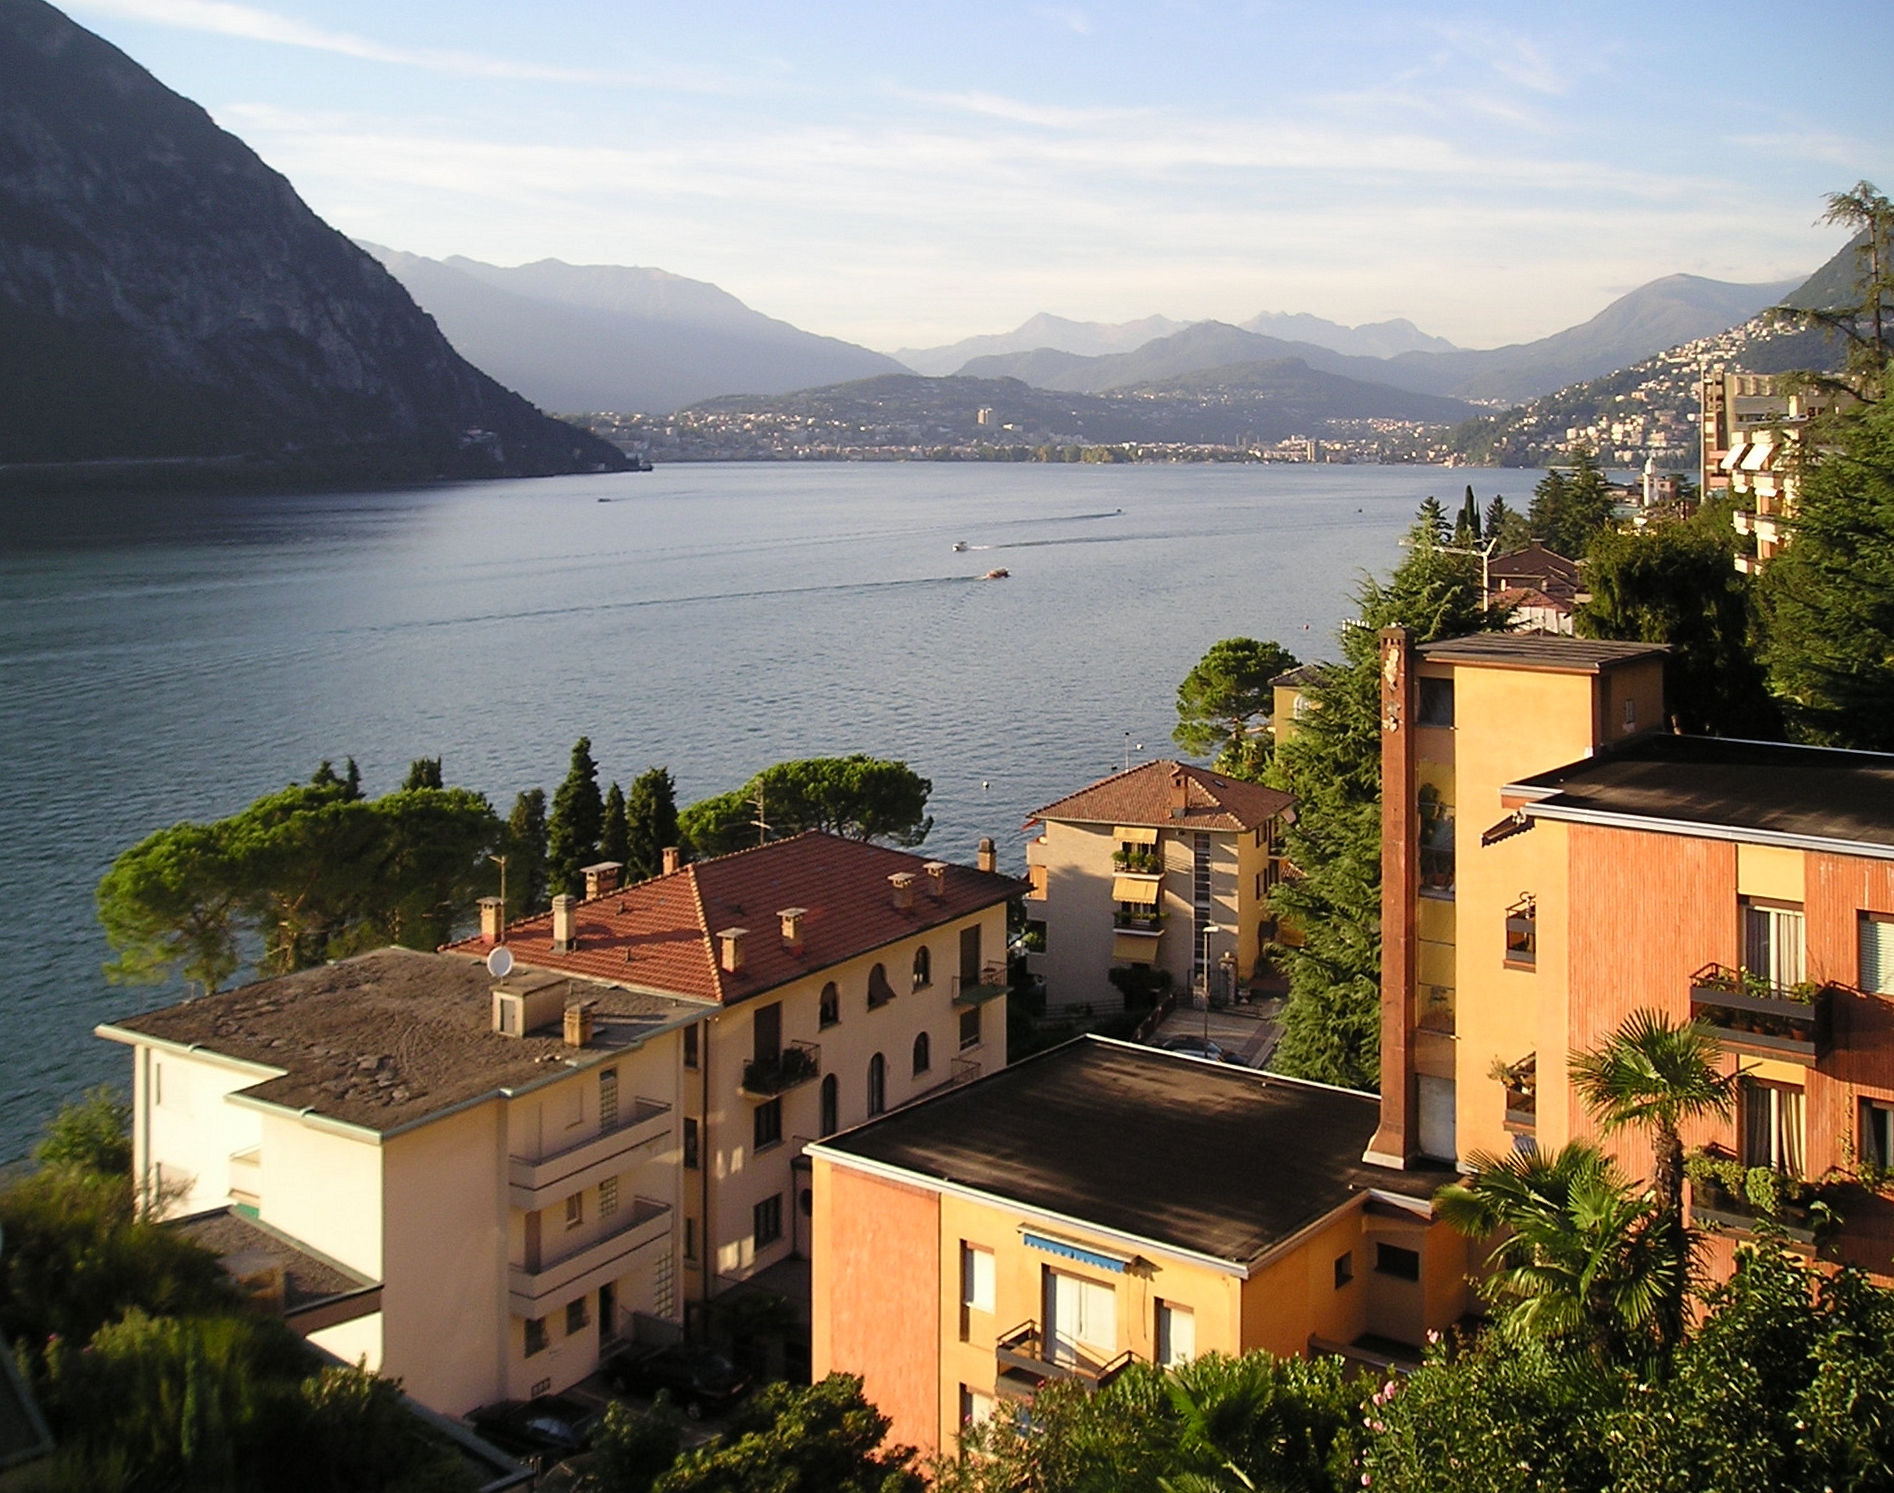 Italia : Os Melhores Lugares Para Visitar na Itália | Urban Park